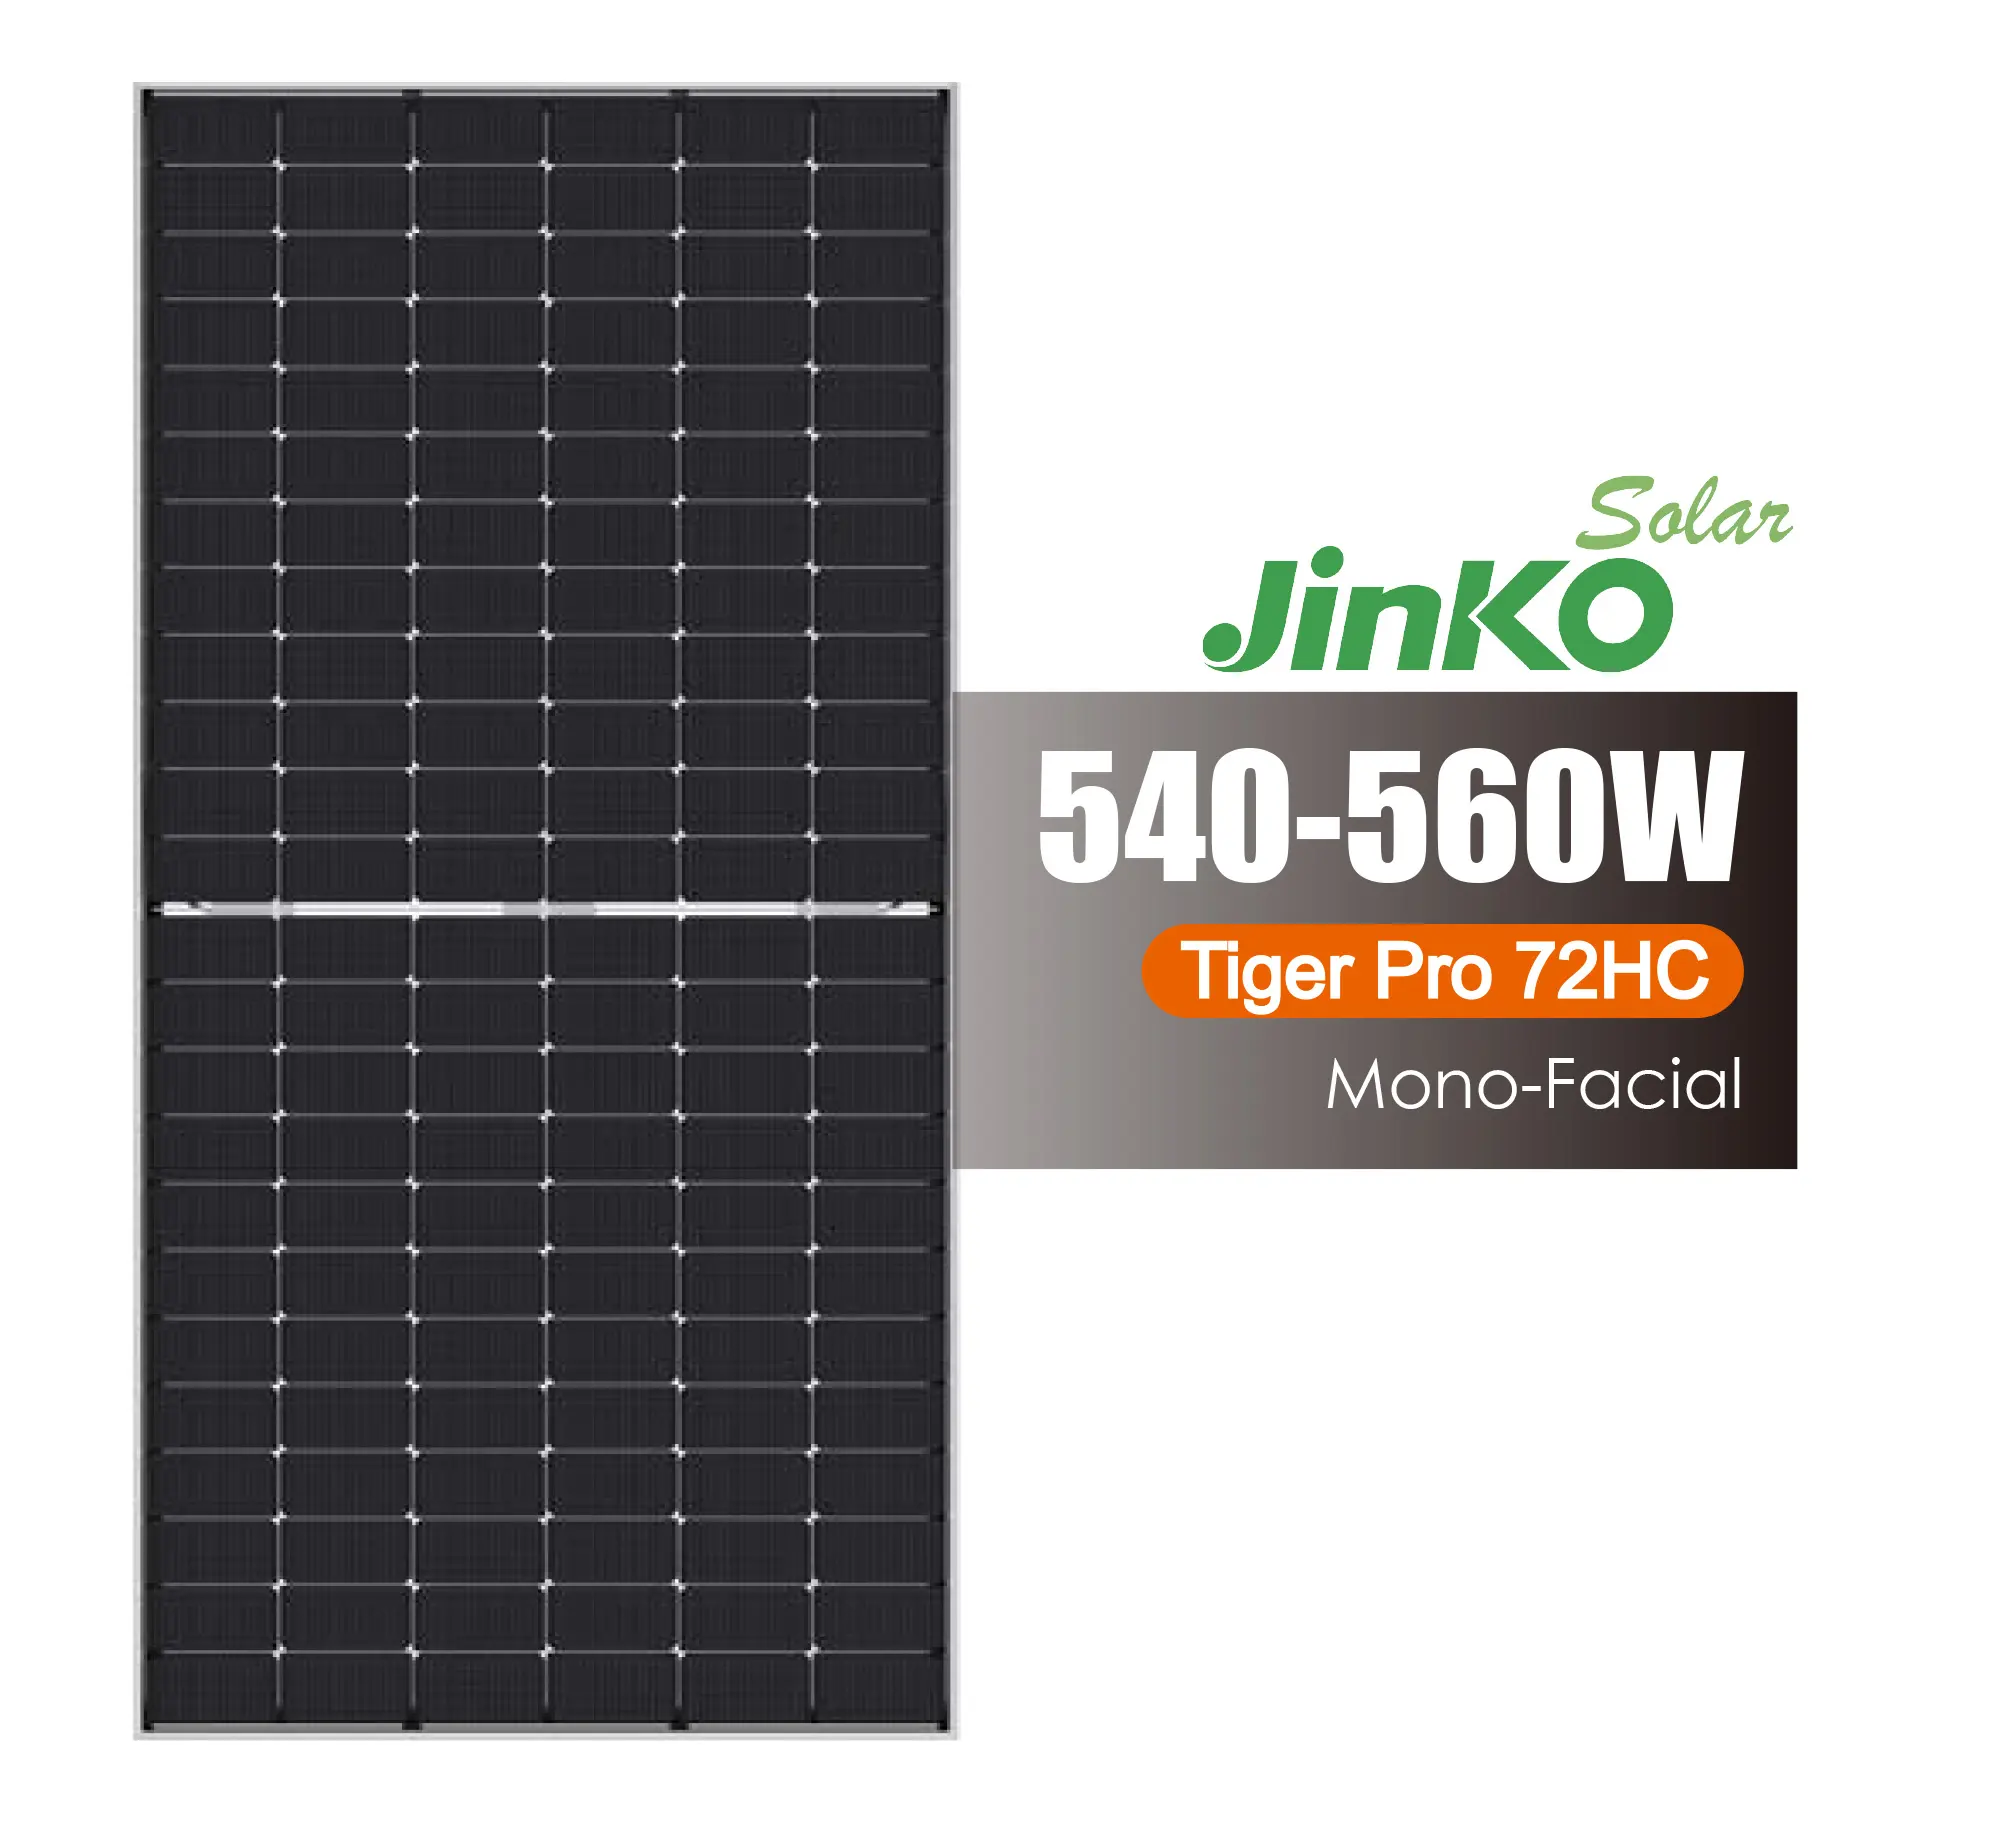 Jinko Chất Lượng Cao Tấm Pin Mặt Trời 182 Tế Bào Mono Tiger Pro 72hc 540-560W Tấm Năng Lượng Mặt Trời Cho Năng Lượng Mặt Trời Hệ Thống